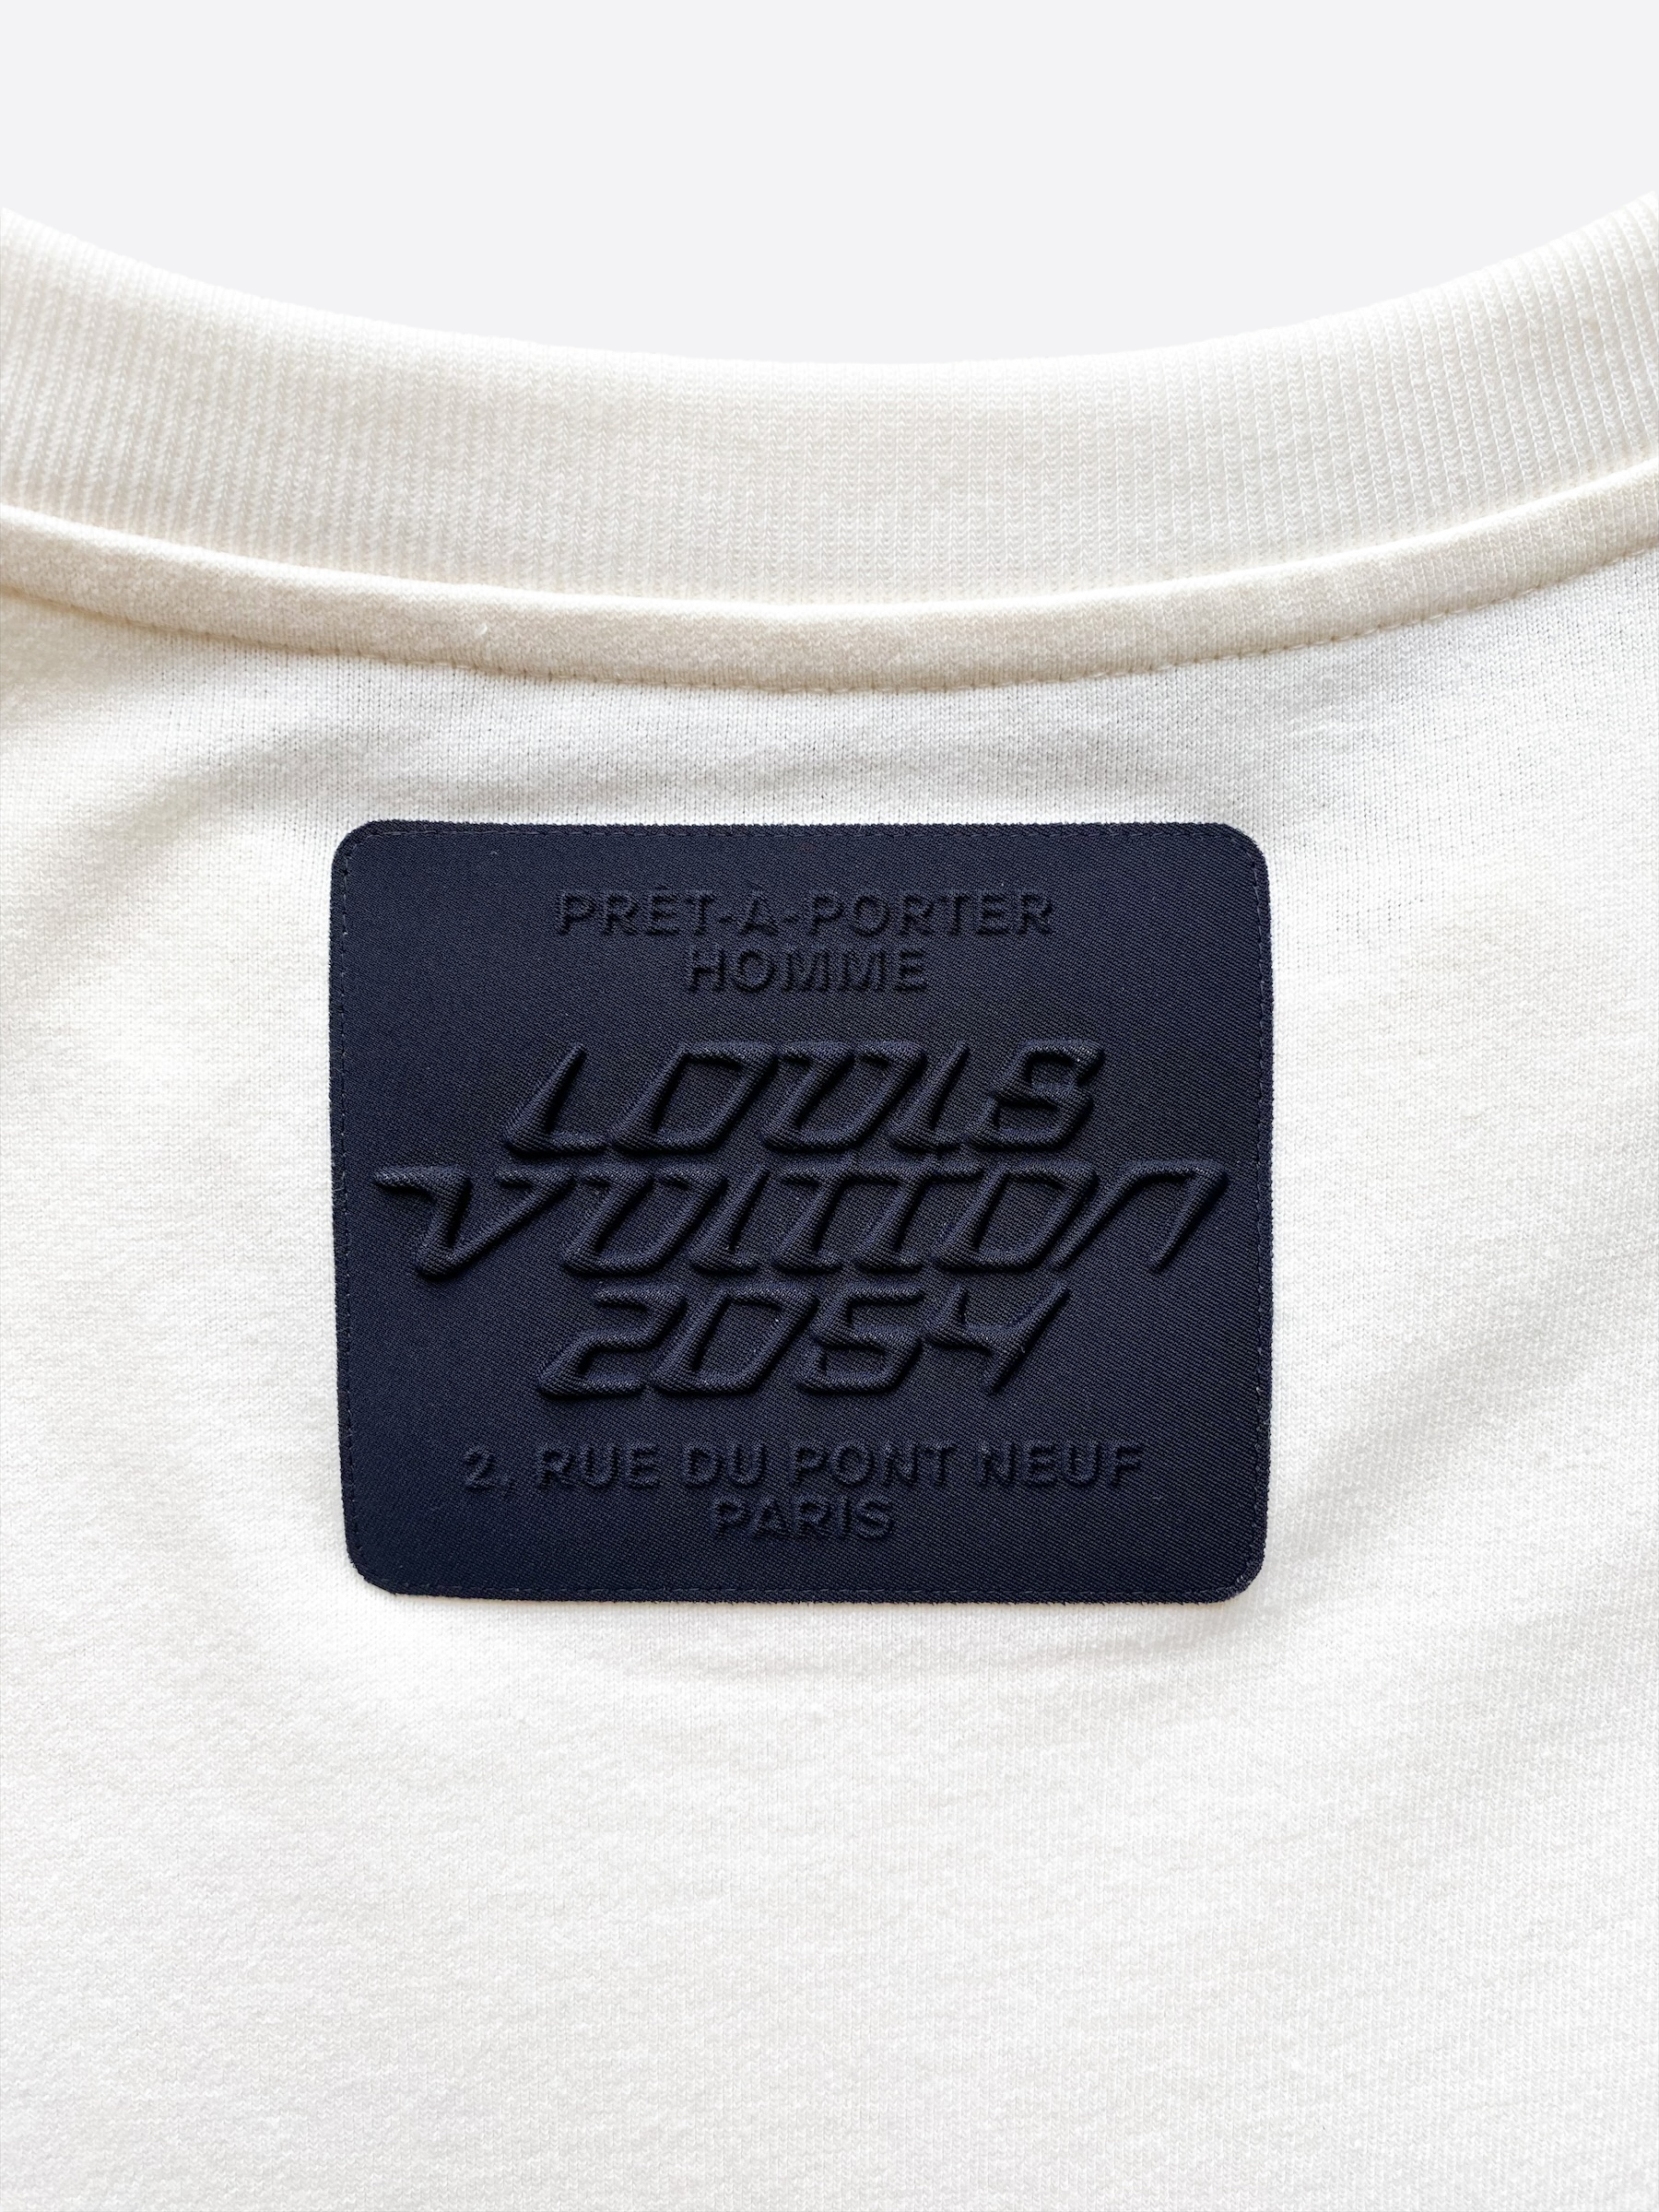 Louis Vuitton Mens T shirt Planes Design limited edition size Large Ex  Condition